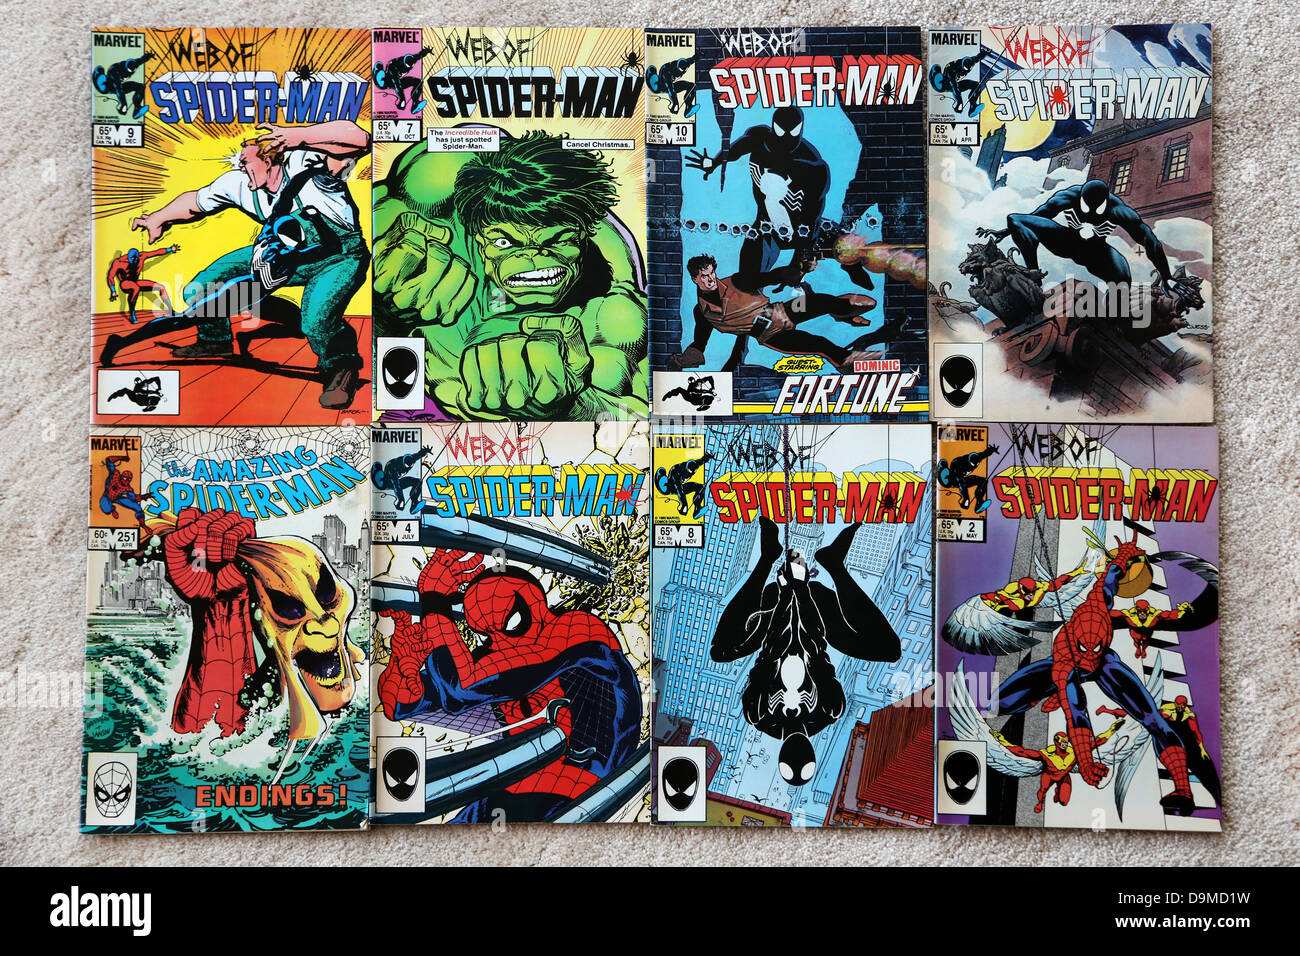 Sammlung von Marvel Comics im Web von Spider-Man und The Amazing Spider-man Stockfoto